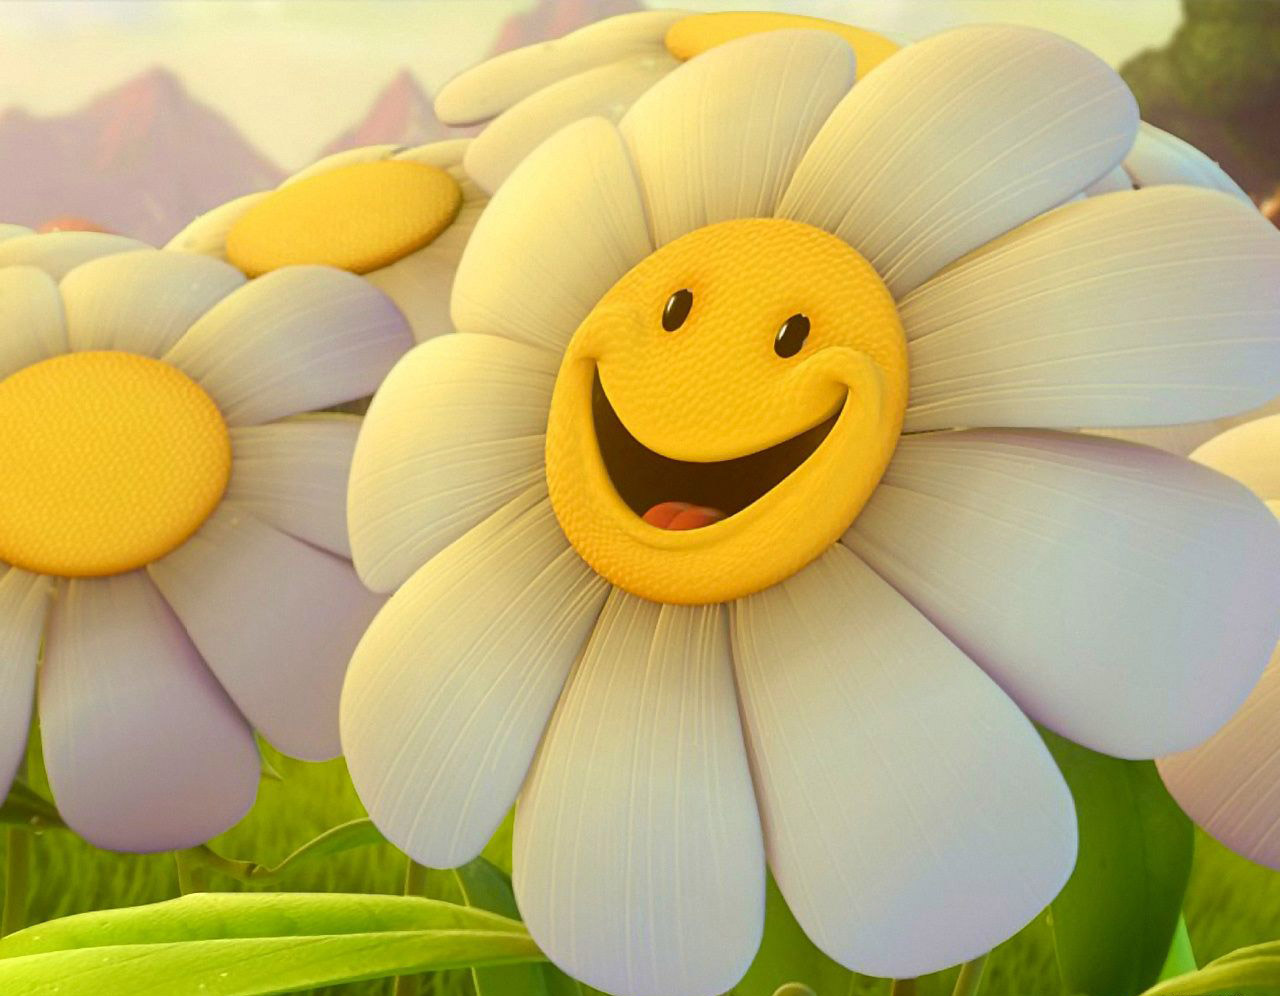 http://2.bp.blogspot.com/-2G04KvY8plk/Tm1KgxViSTI/AAAAAAAAAZs/IHvINTjVy6k/s1600/Smiley_Flower_Happy%2521_wallpaper.jpg